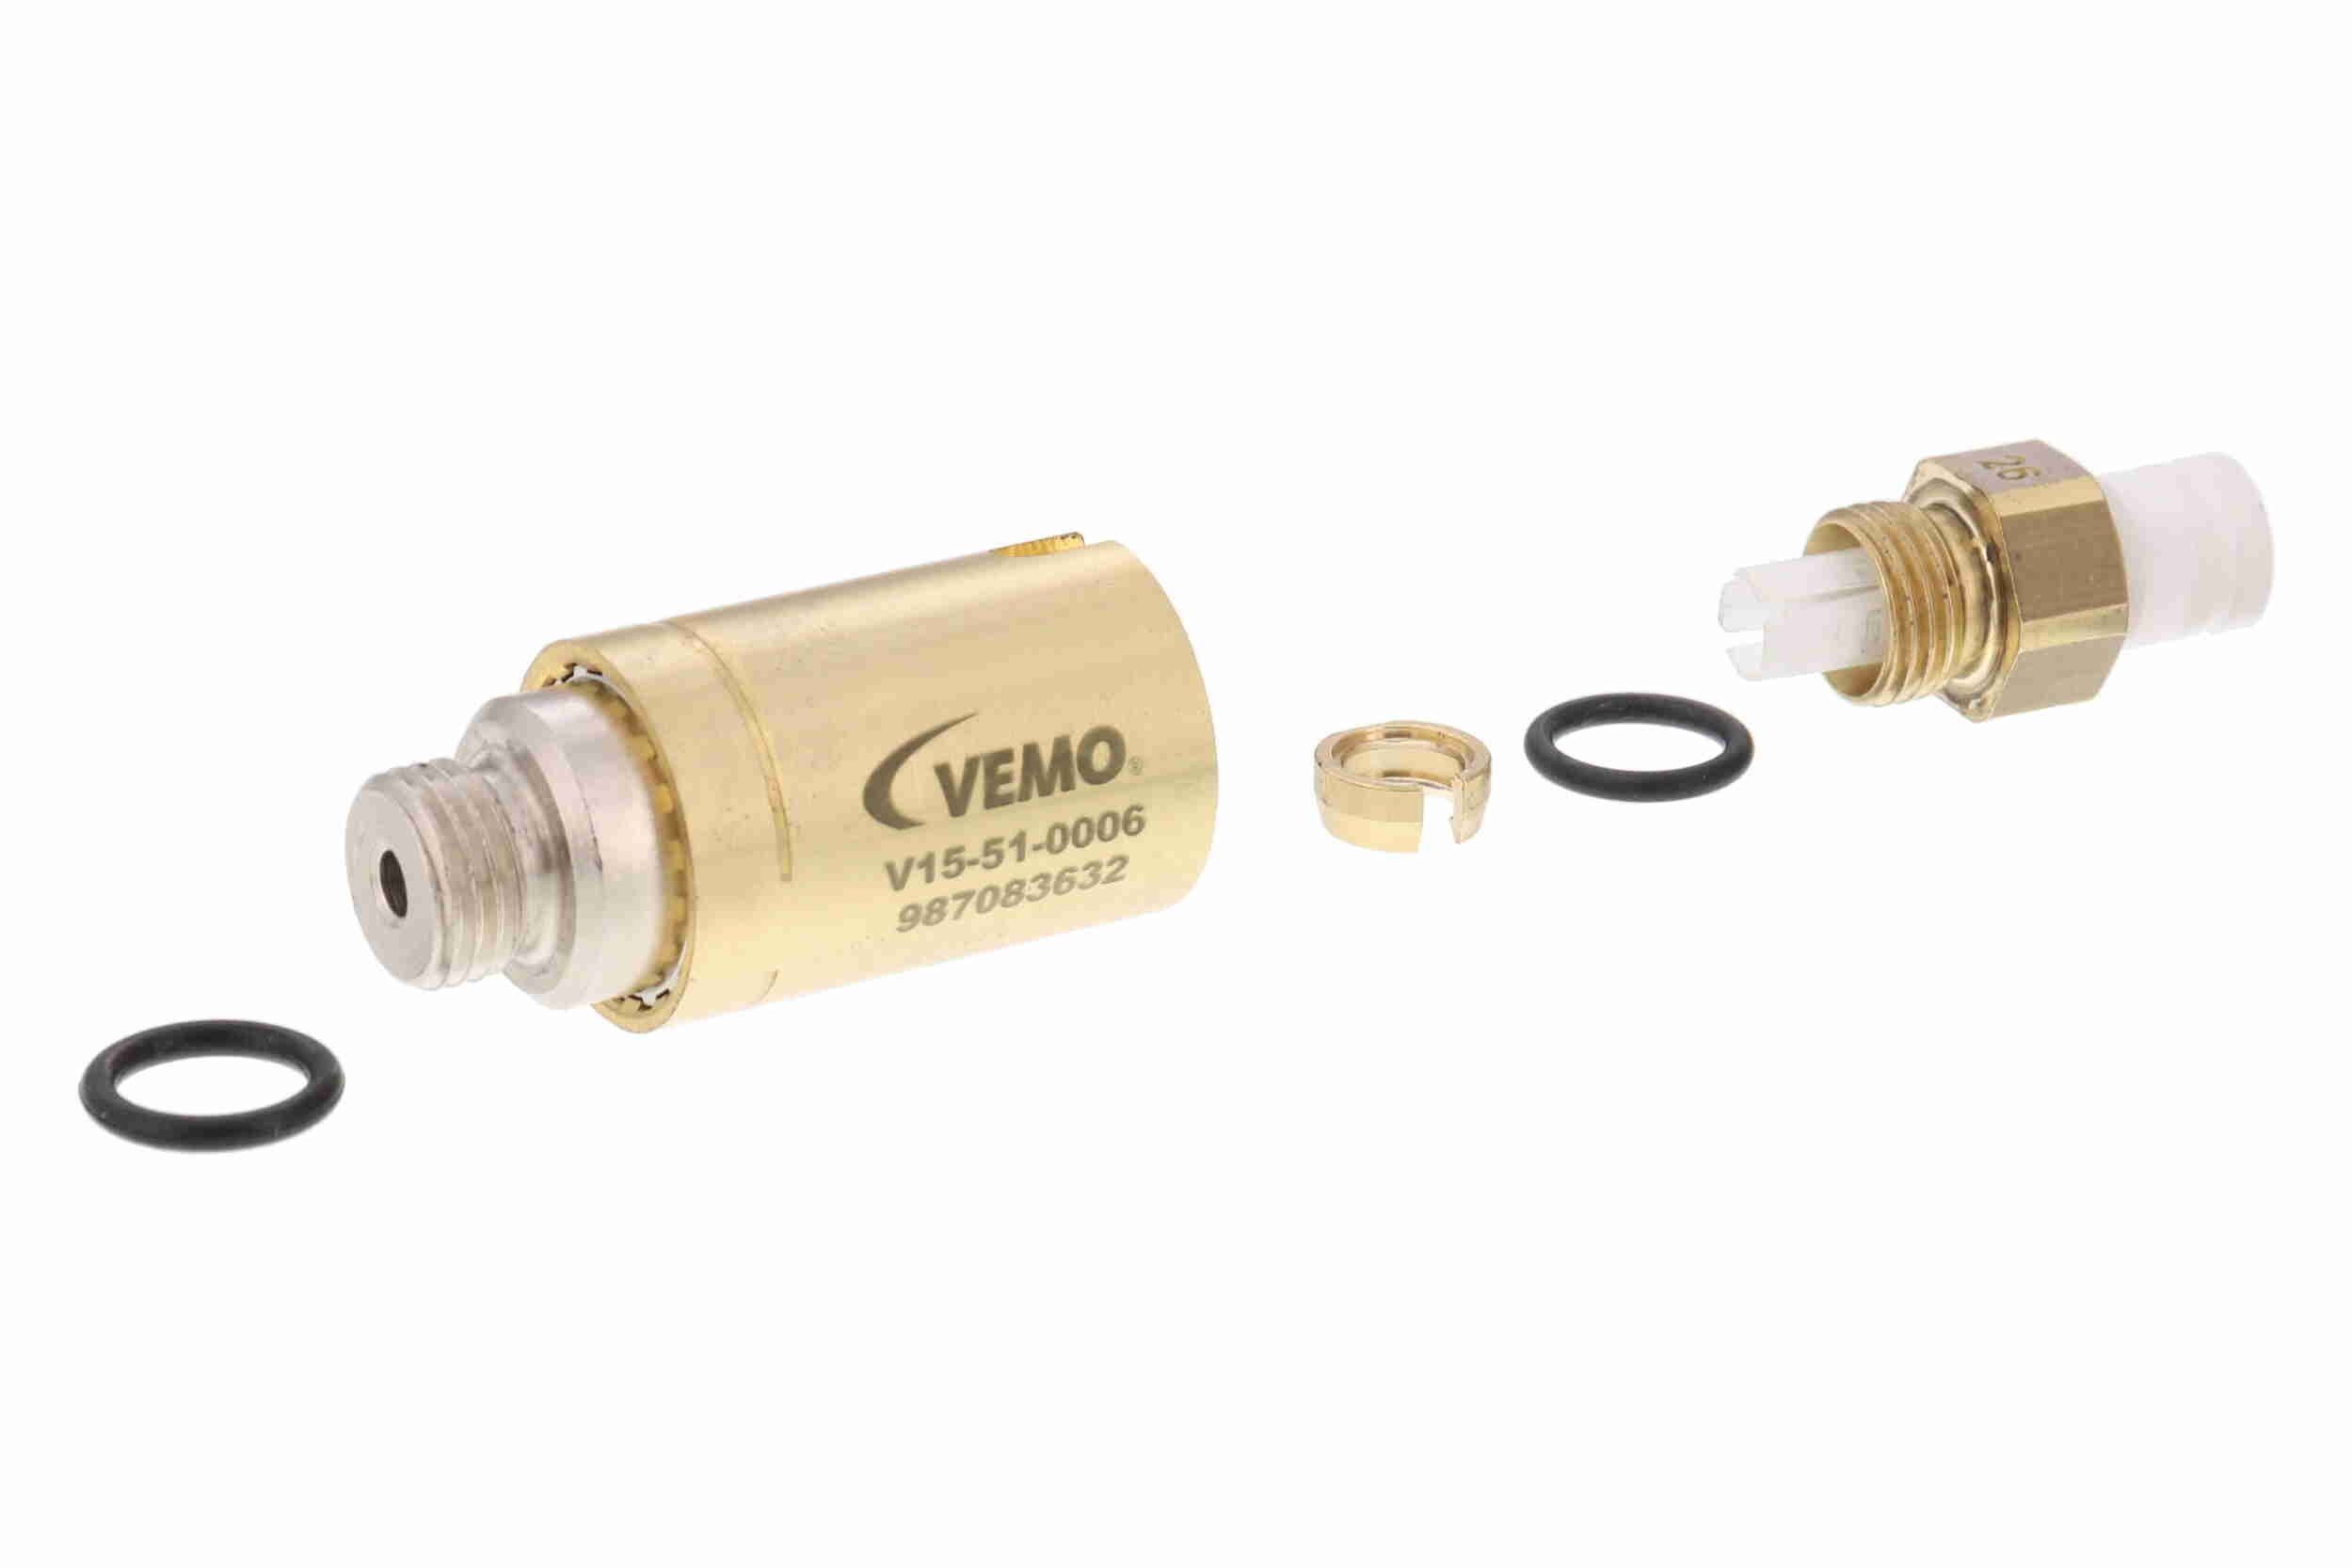 VEMO V15-51-0006 Valve, compressed-air system Q+, original equipment manufacturer quality